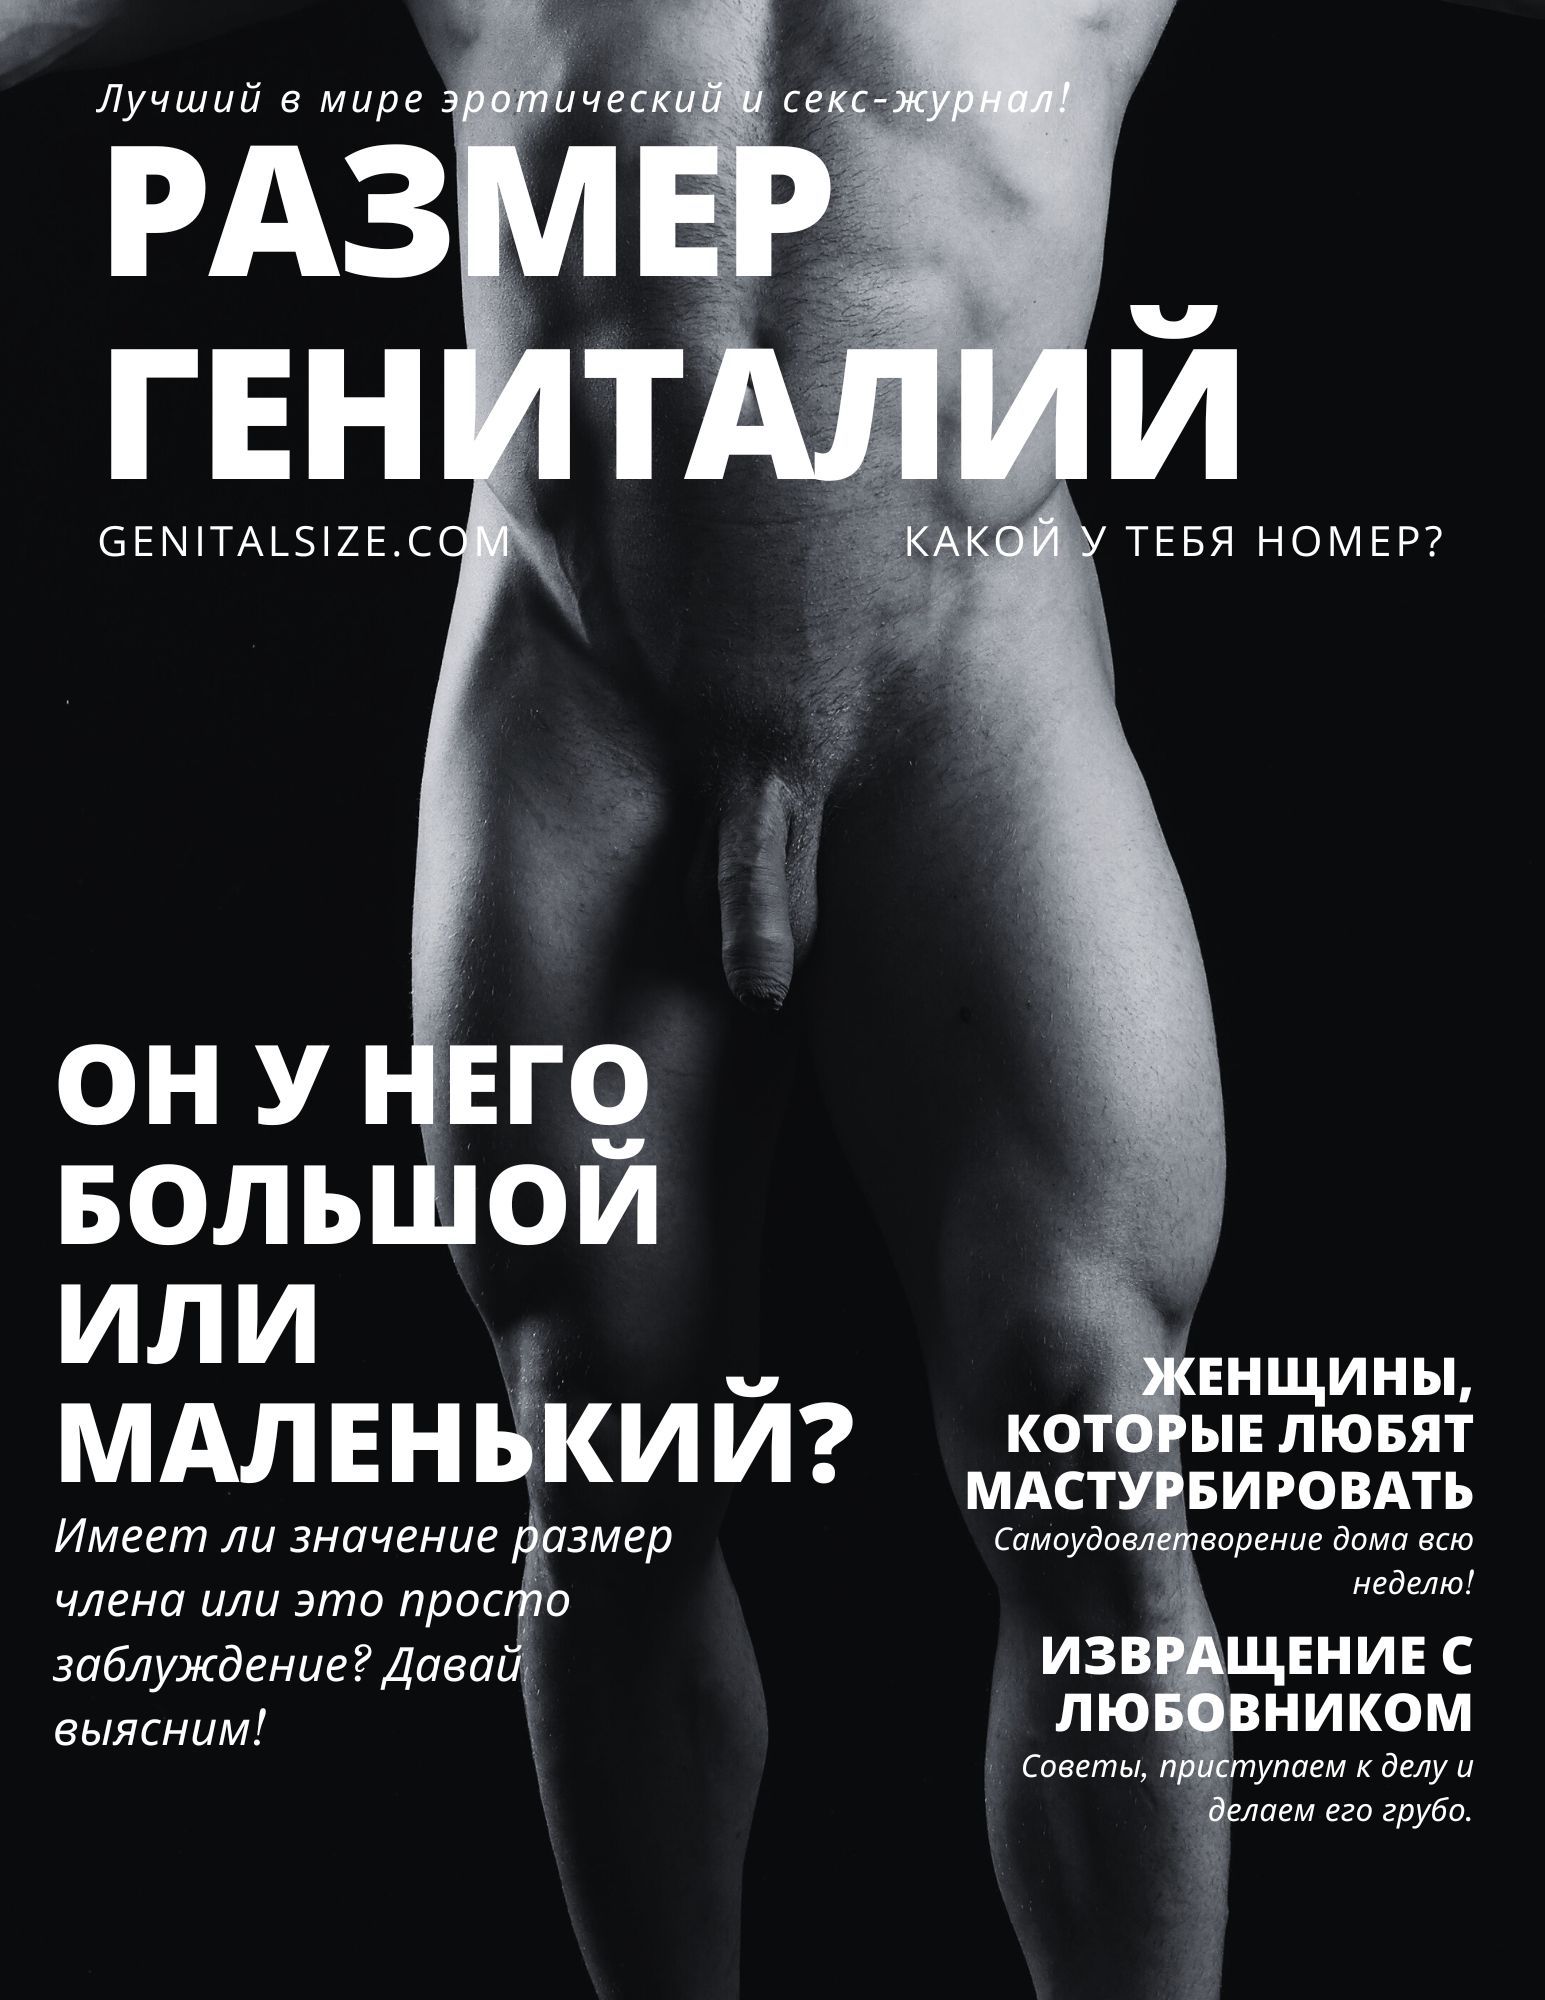 Обложка журнала с изображением обнаженного мужского торса и вопросом, насколько велик его пенис?